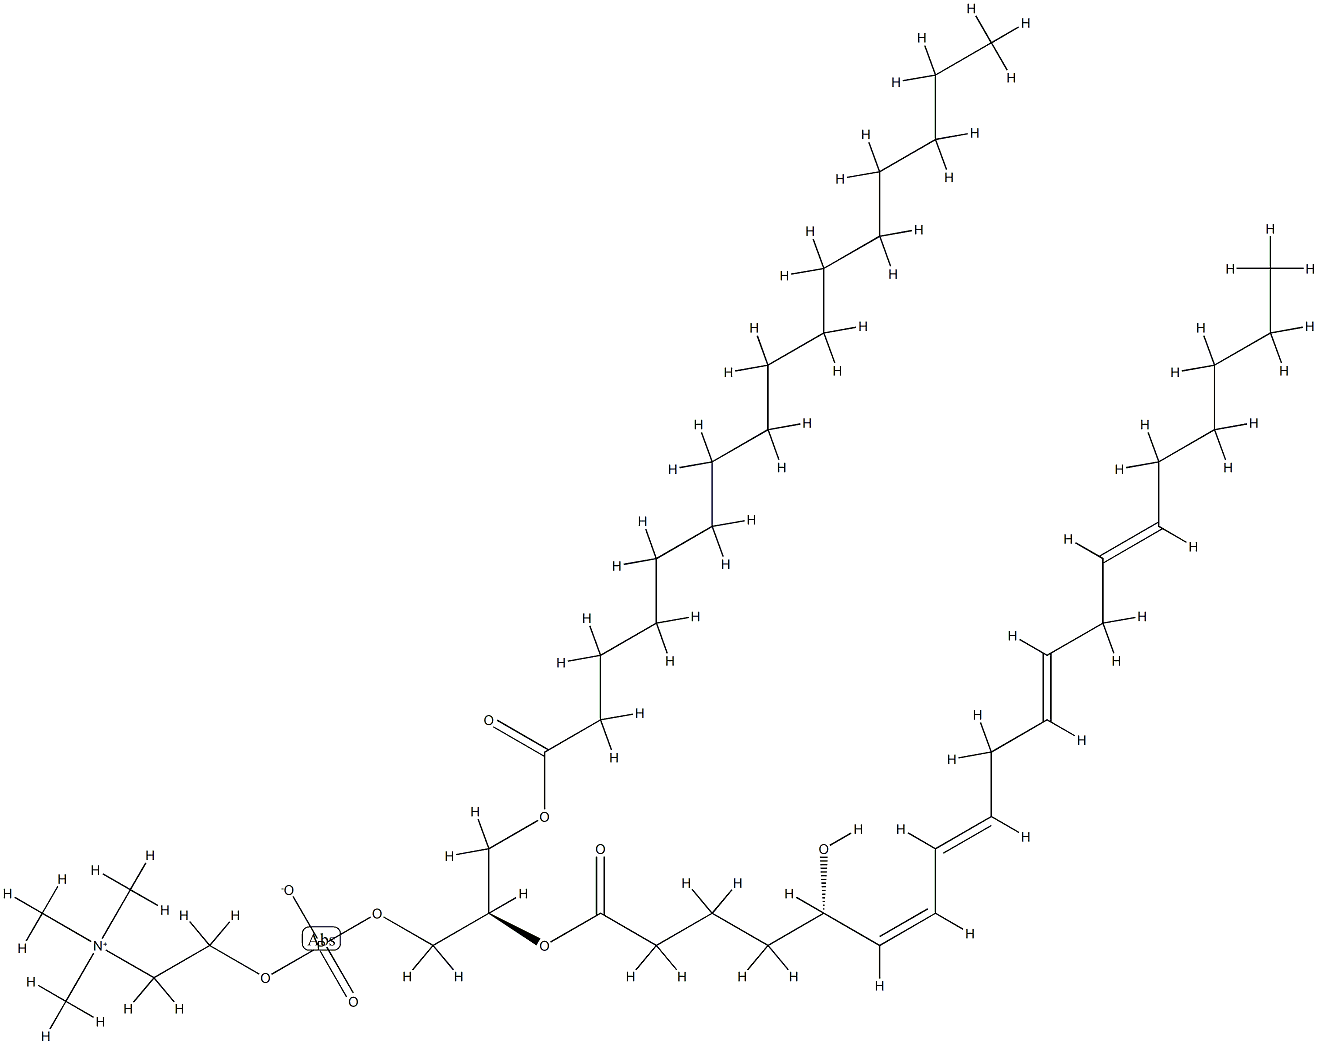 125111-41-3 1-palmitoyl-2-(5-hydroxy-6,8,11,14-eicosatetraenoyl)-glycero-3-phosphocholine